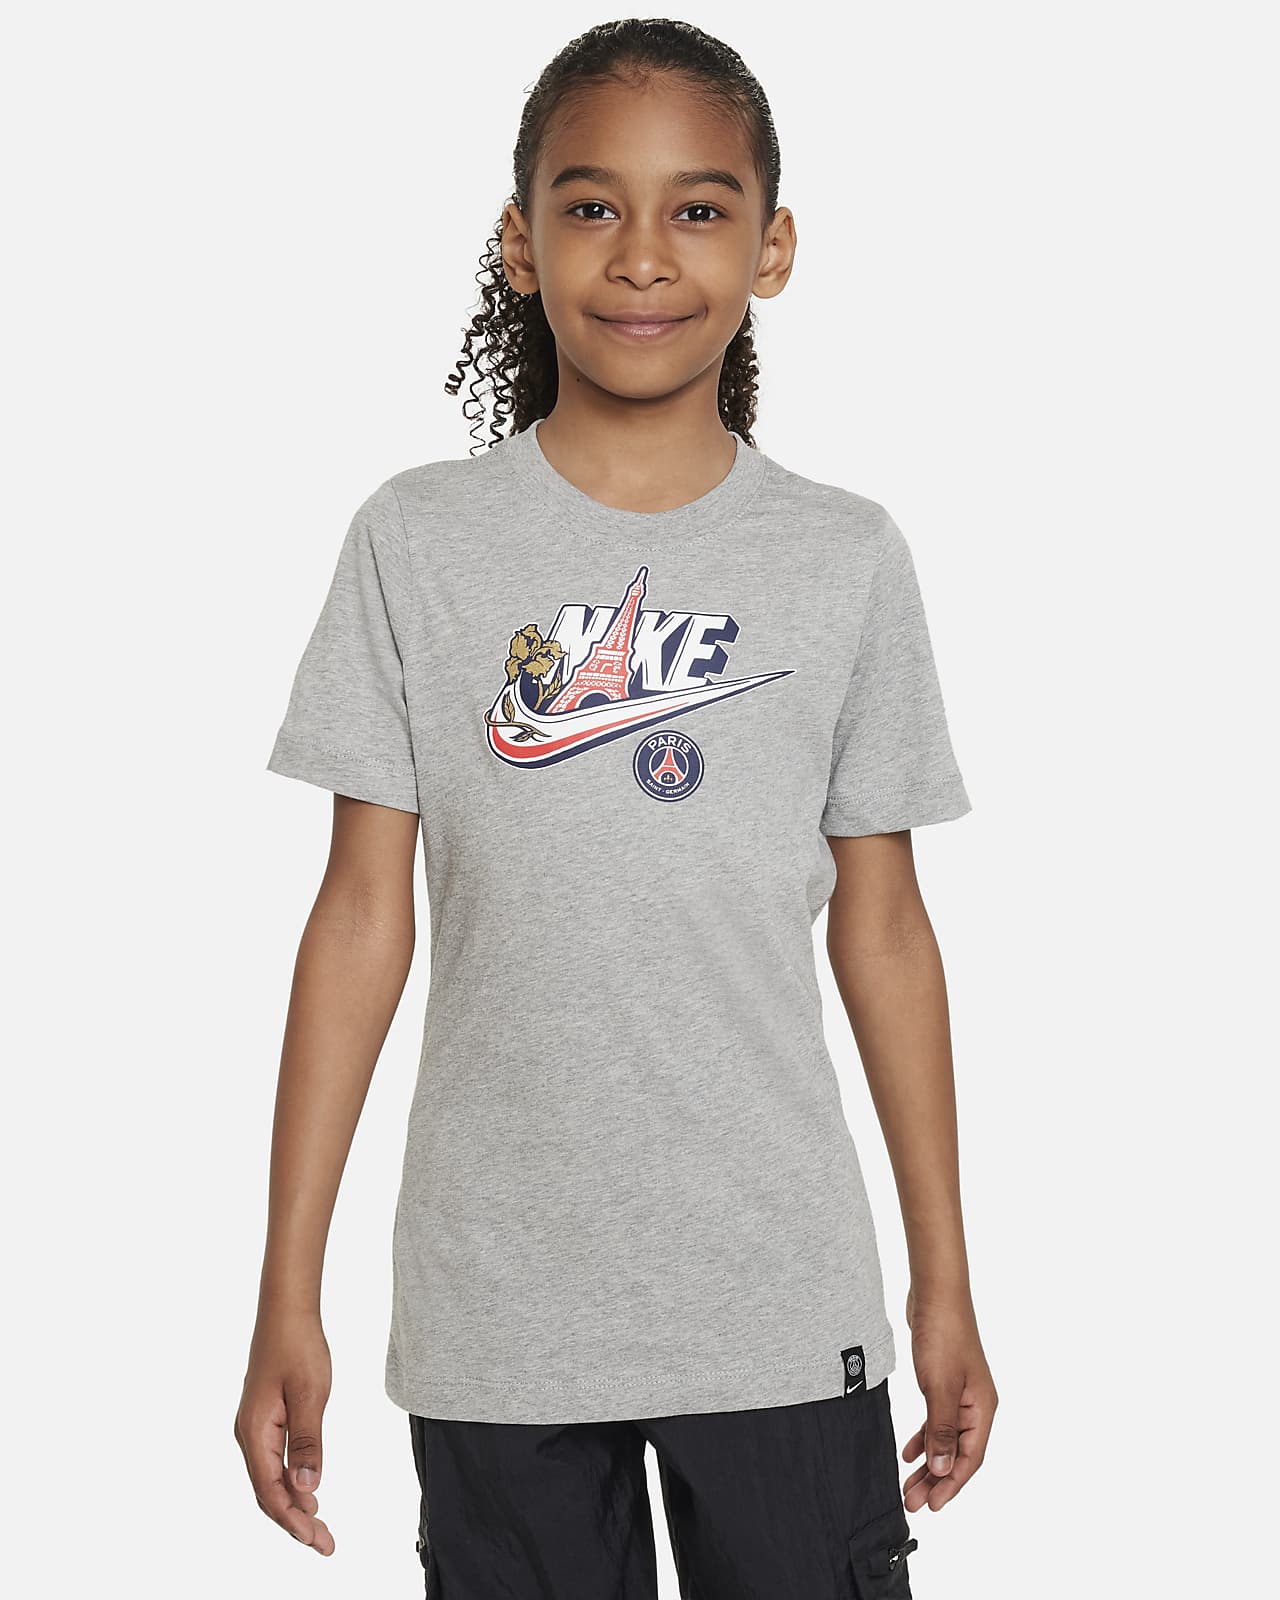 Paris Saint-Germain Kids' T-Shirt. Nike.com